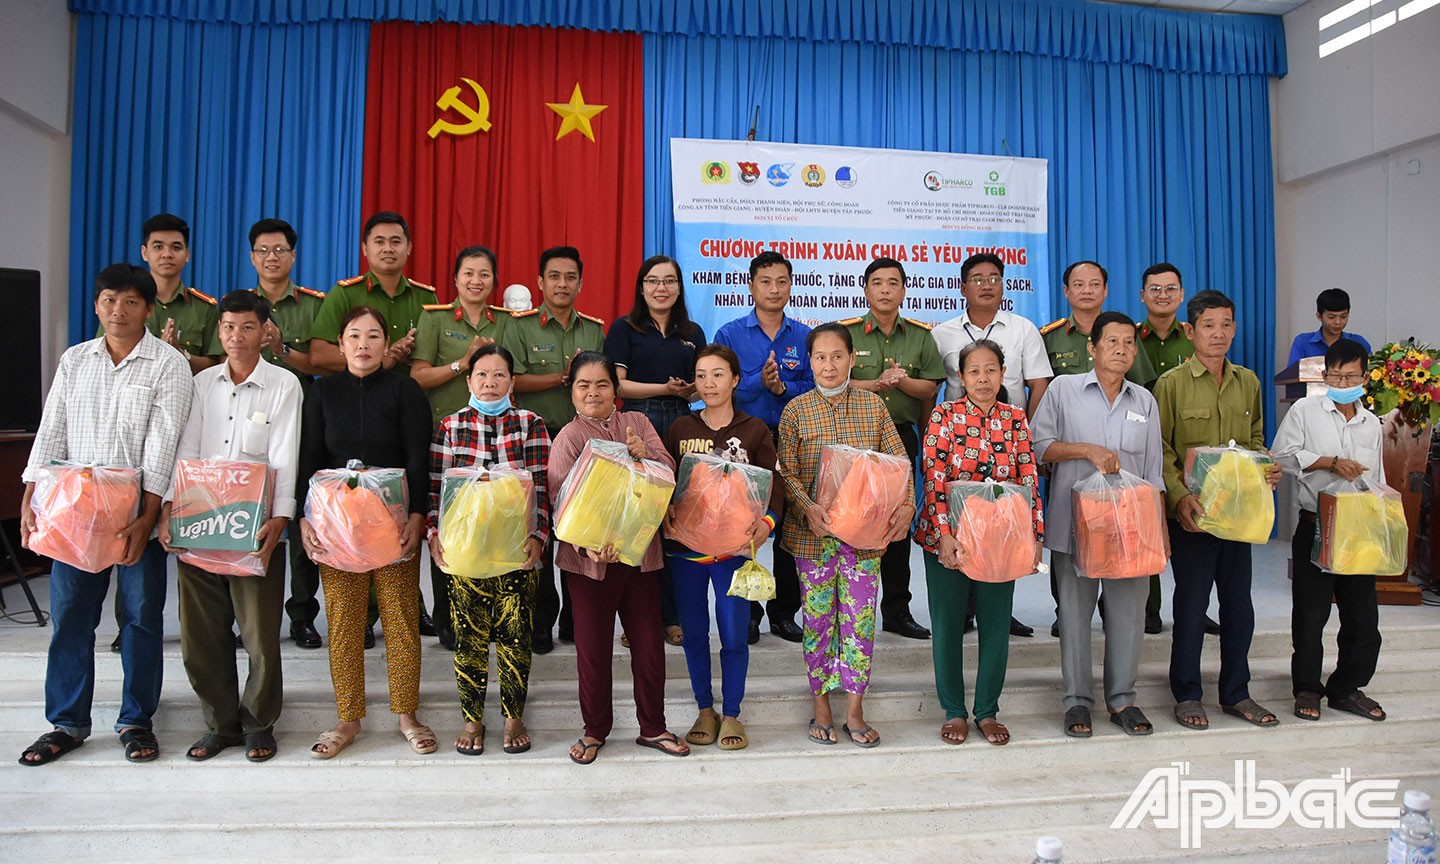 Chương trình “Xuân chia sẻ yêu thương” trên địa bàn xã Thạnh Tân, huyện Tân Phước.